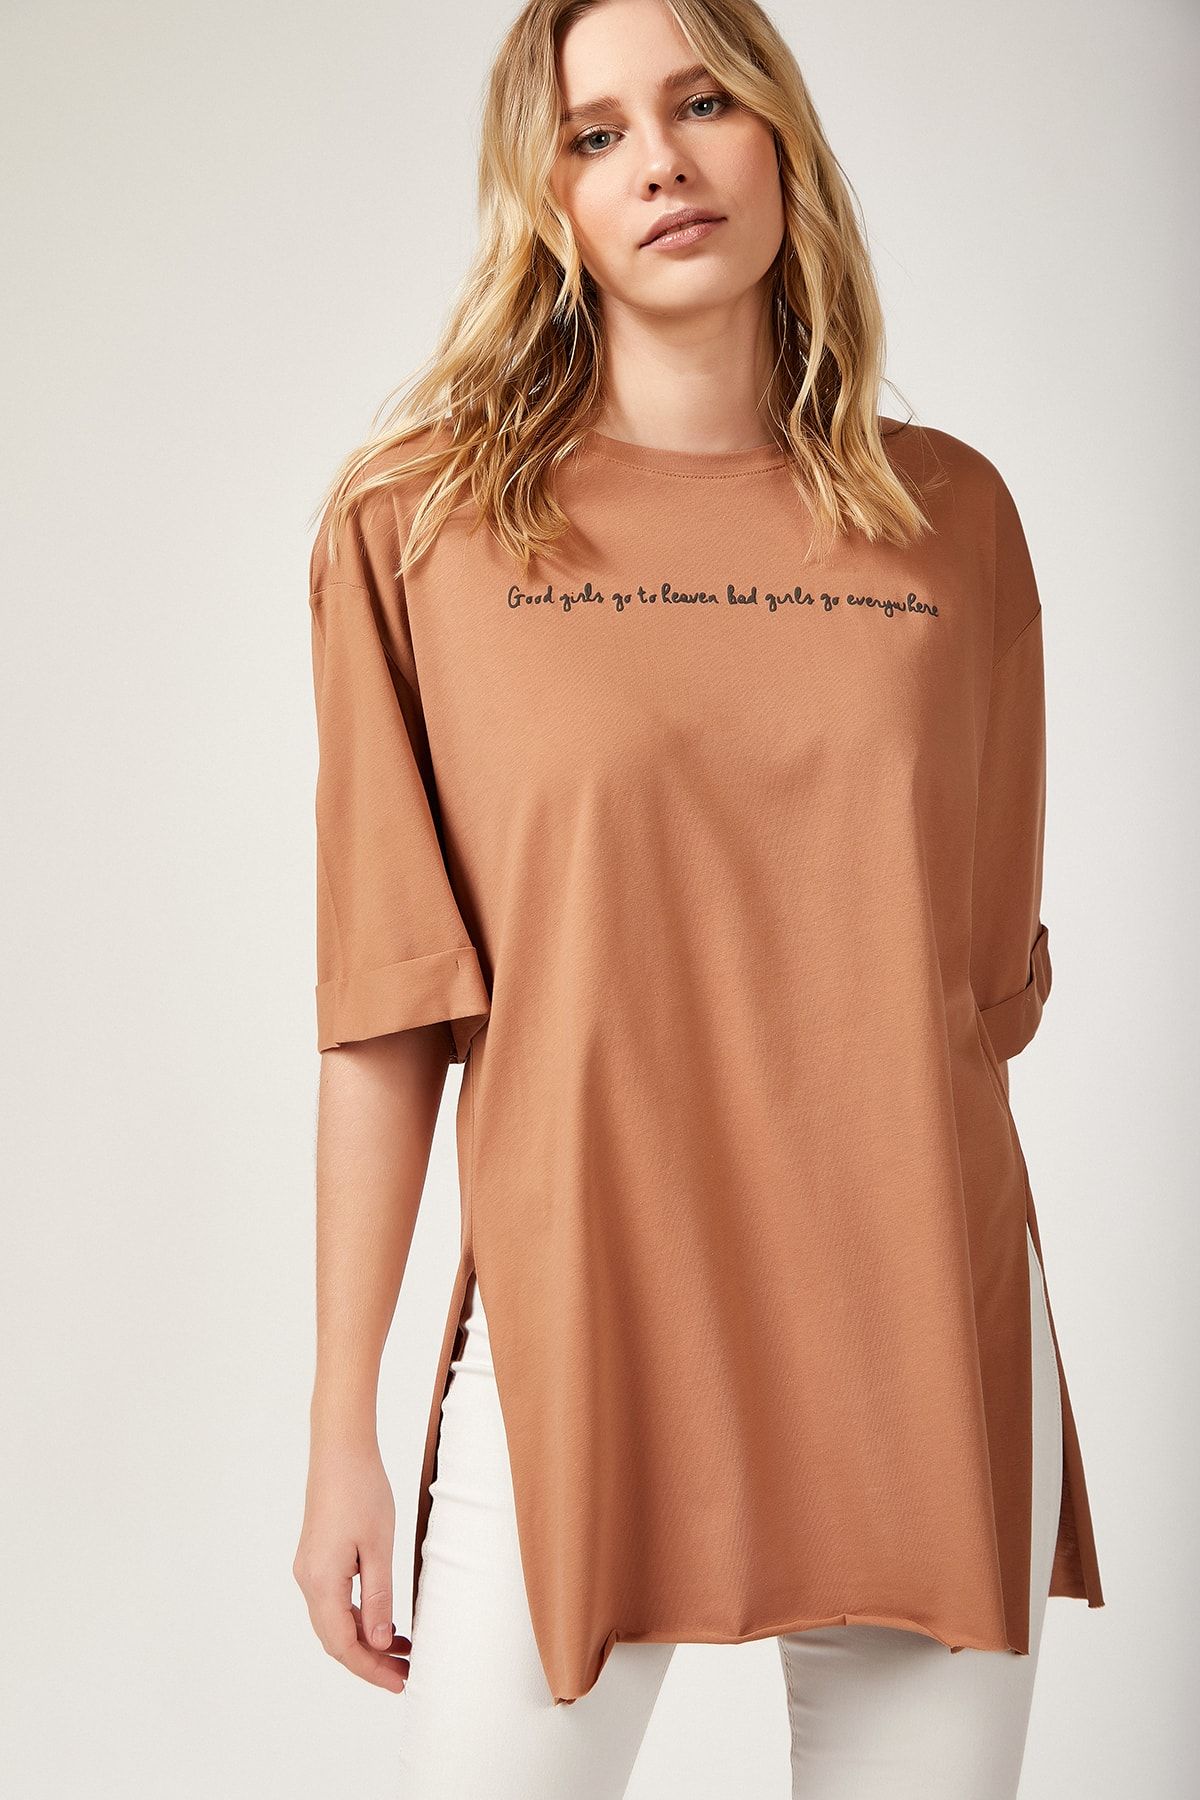 Happiness İstanbul Kadın Taba Yırtmaçlı Bol Uzun Örme T-Shirt Ts00163